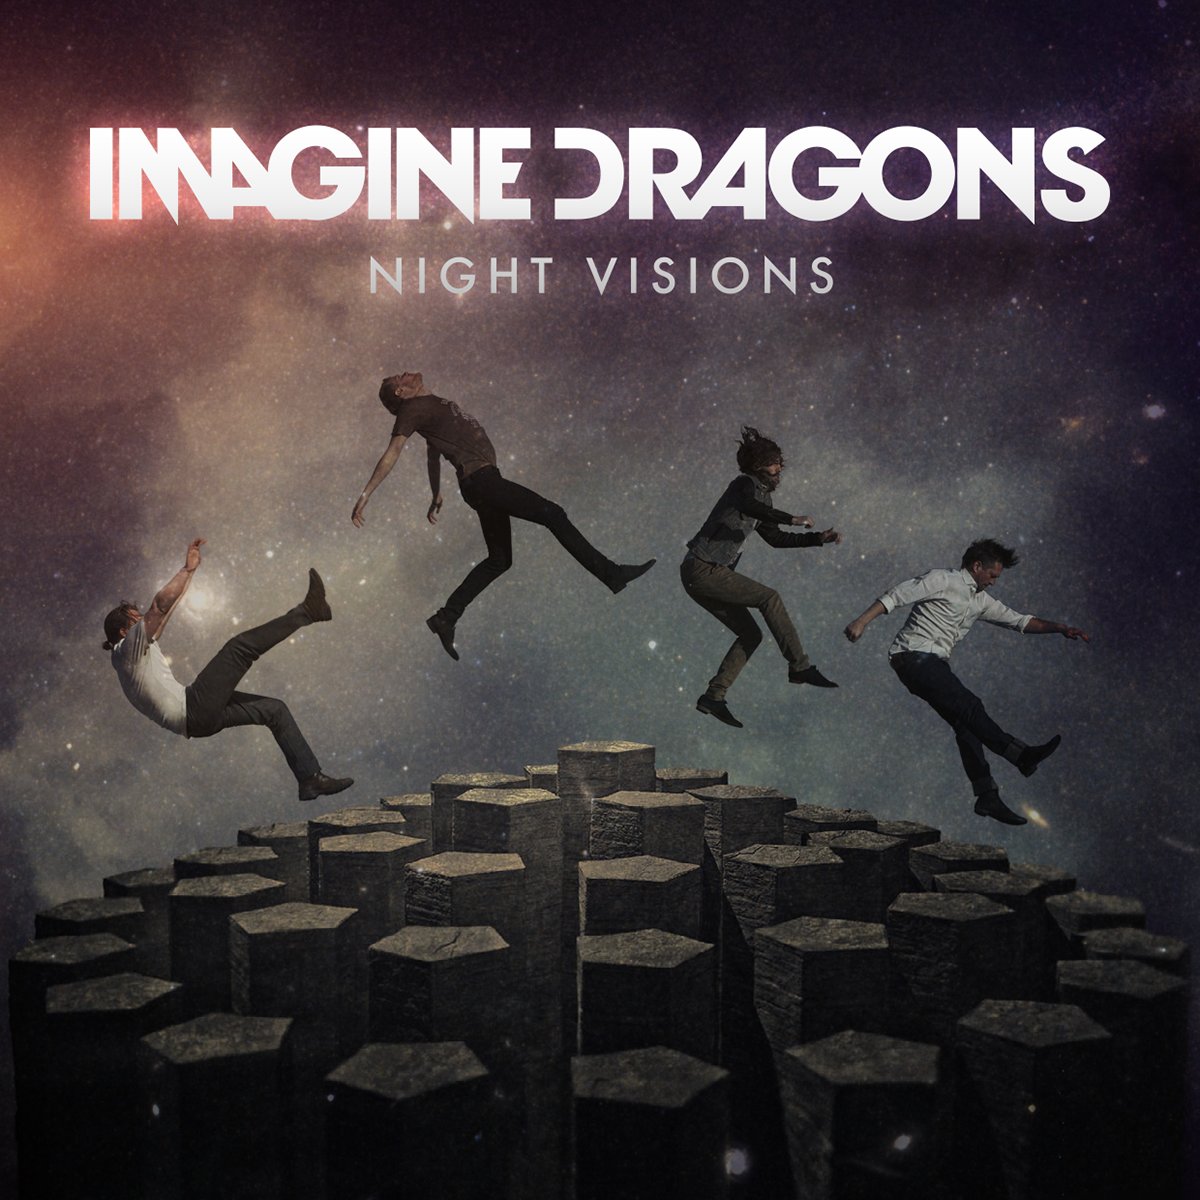 imagine dragons album covers night visions